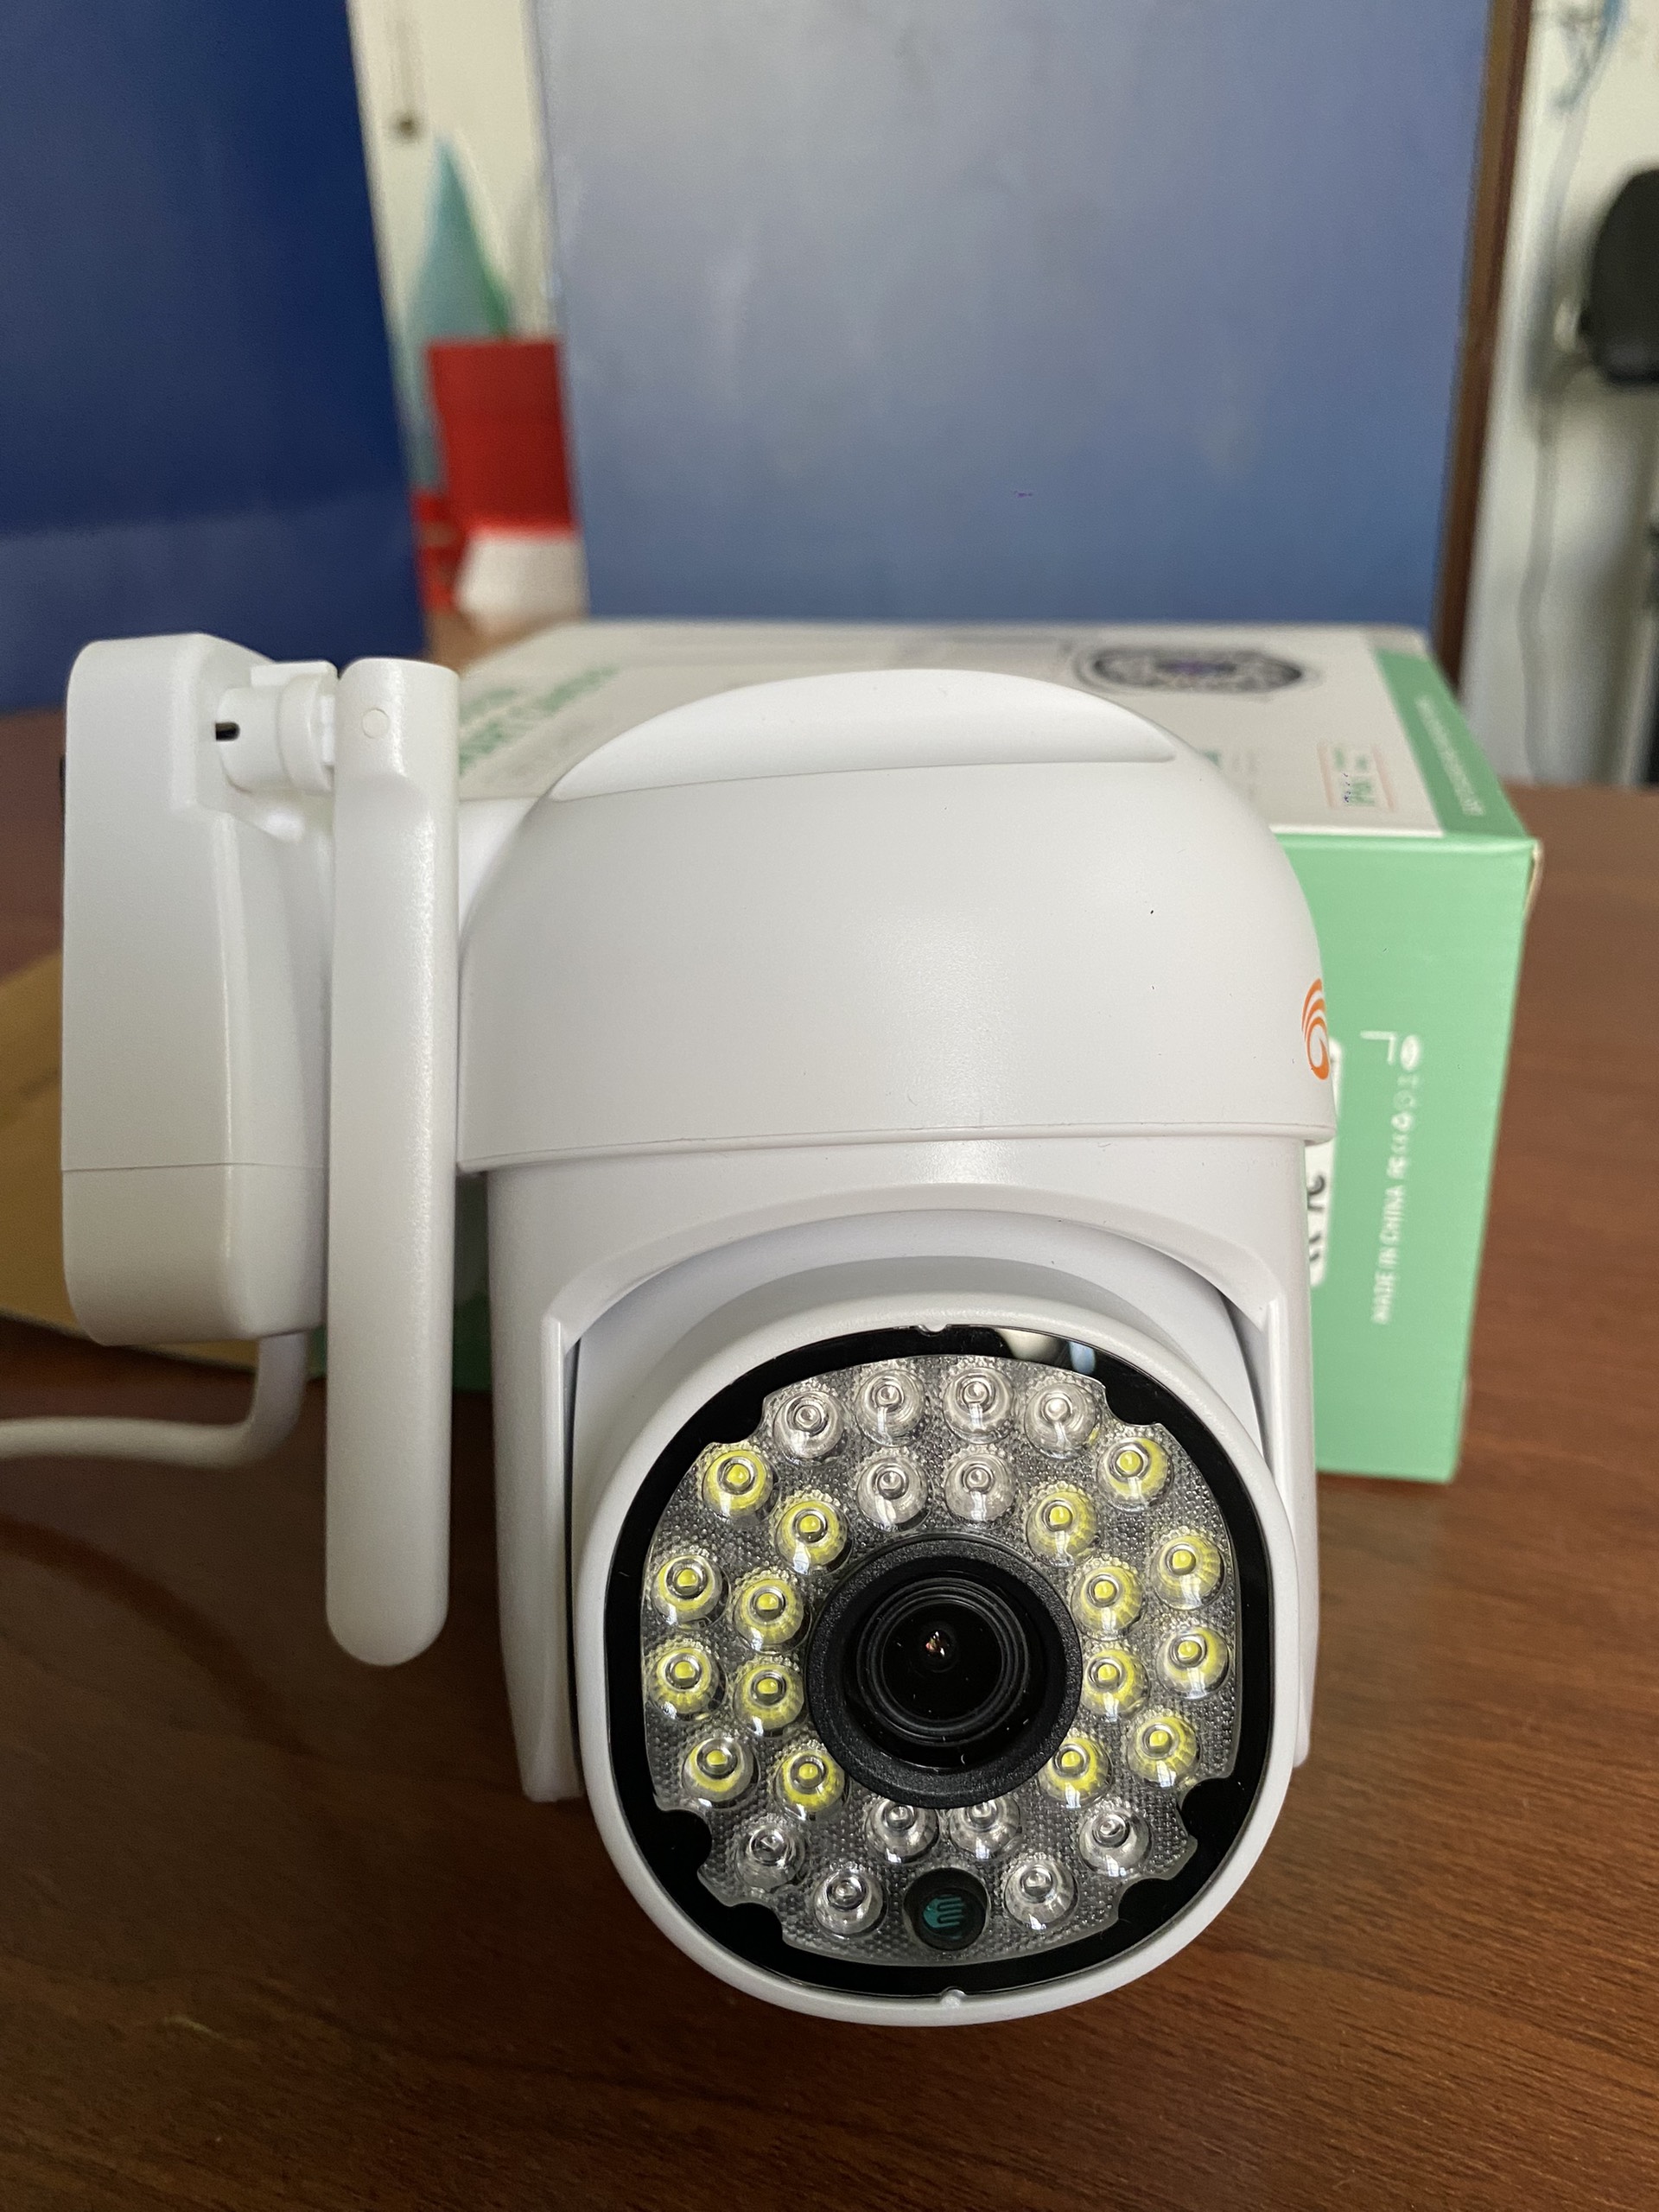 Camera PTZ Yoosee Ngoài Trời 5.0 MPX 14 LED - Xoay 360 Độ Siêu Sắc Nét, Đàm Thoại 2 Chiều, Ban Đêm Có Màu - Hàng Chính Hãng